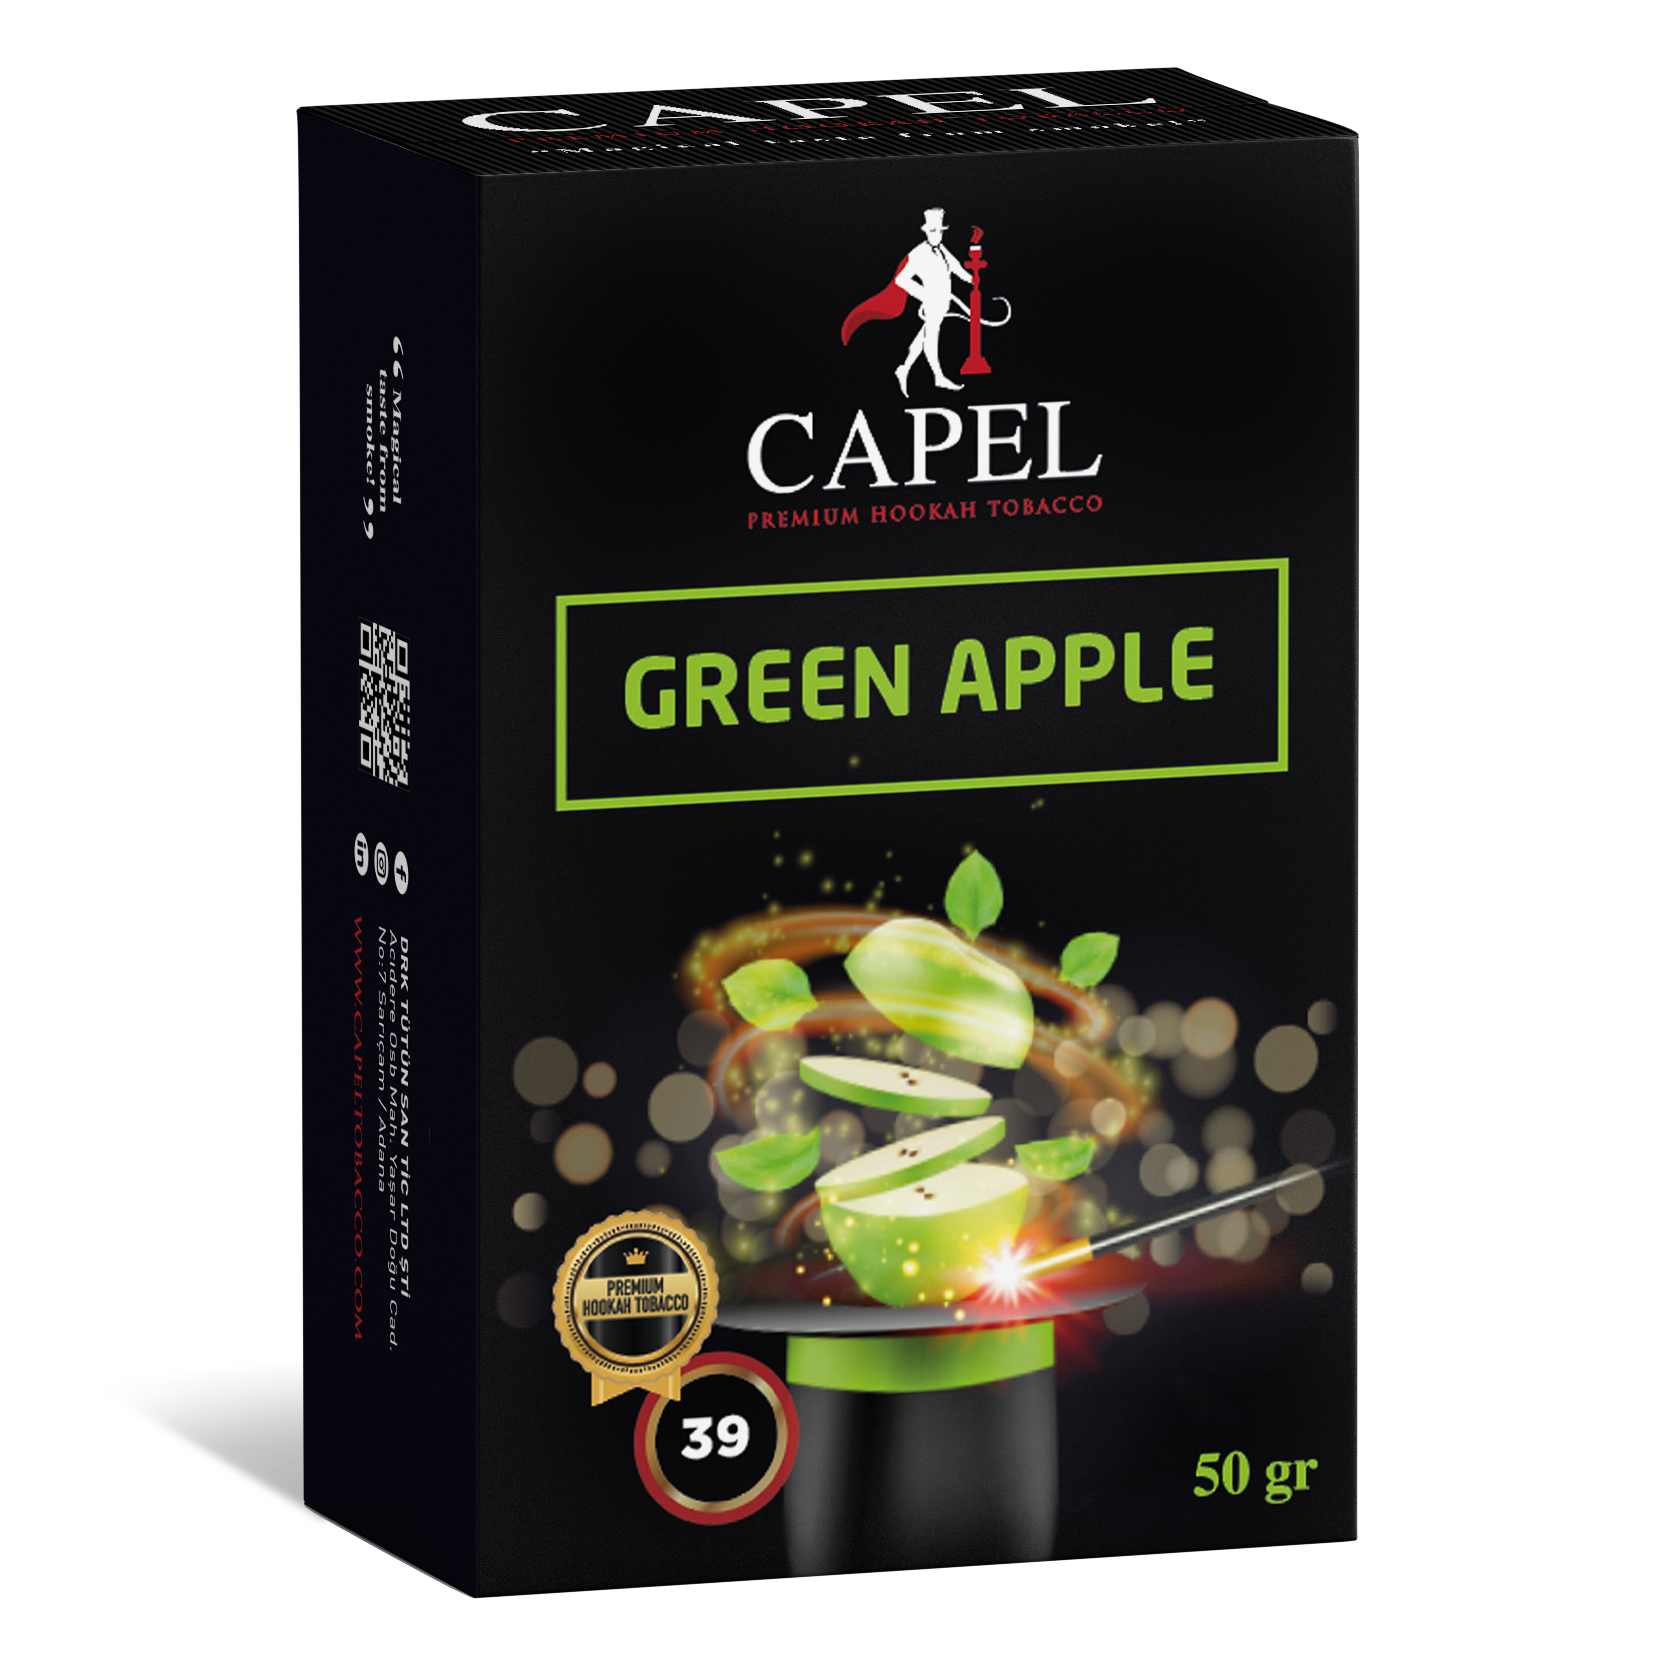 Green Apple – Capel